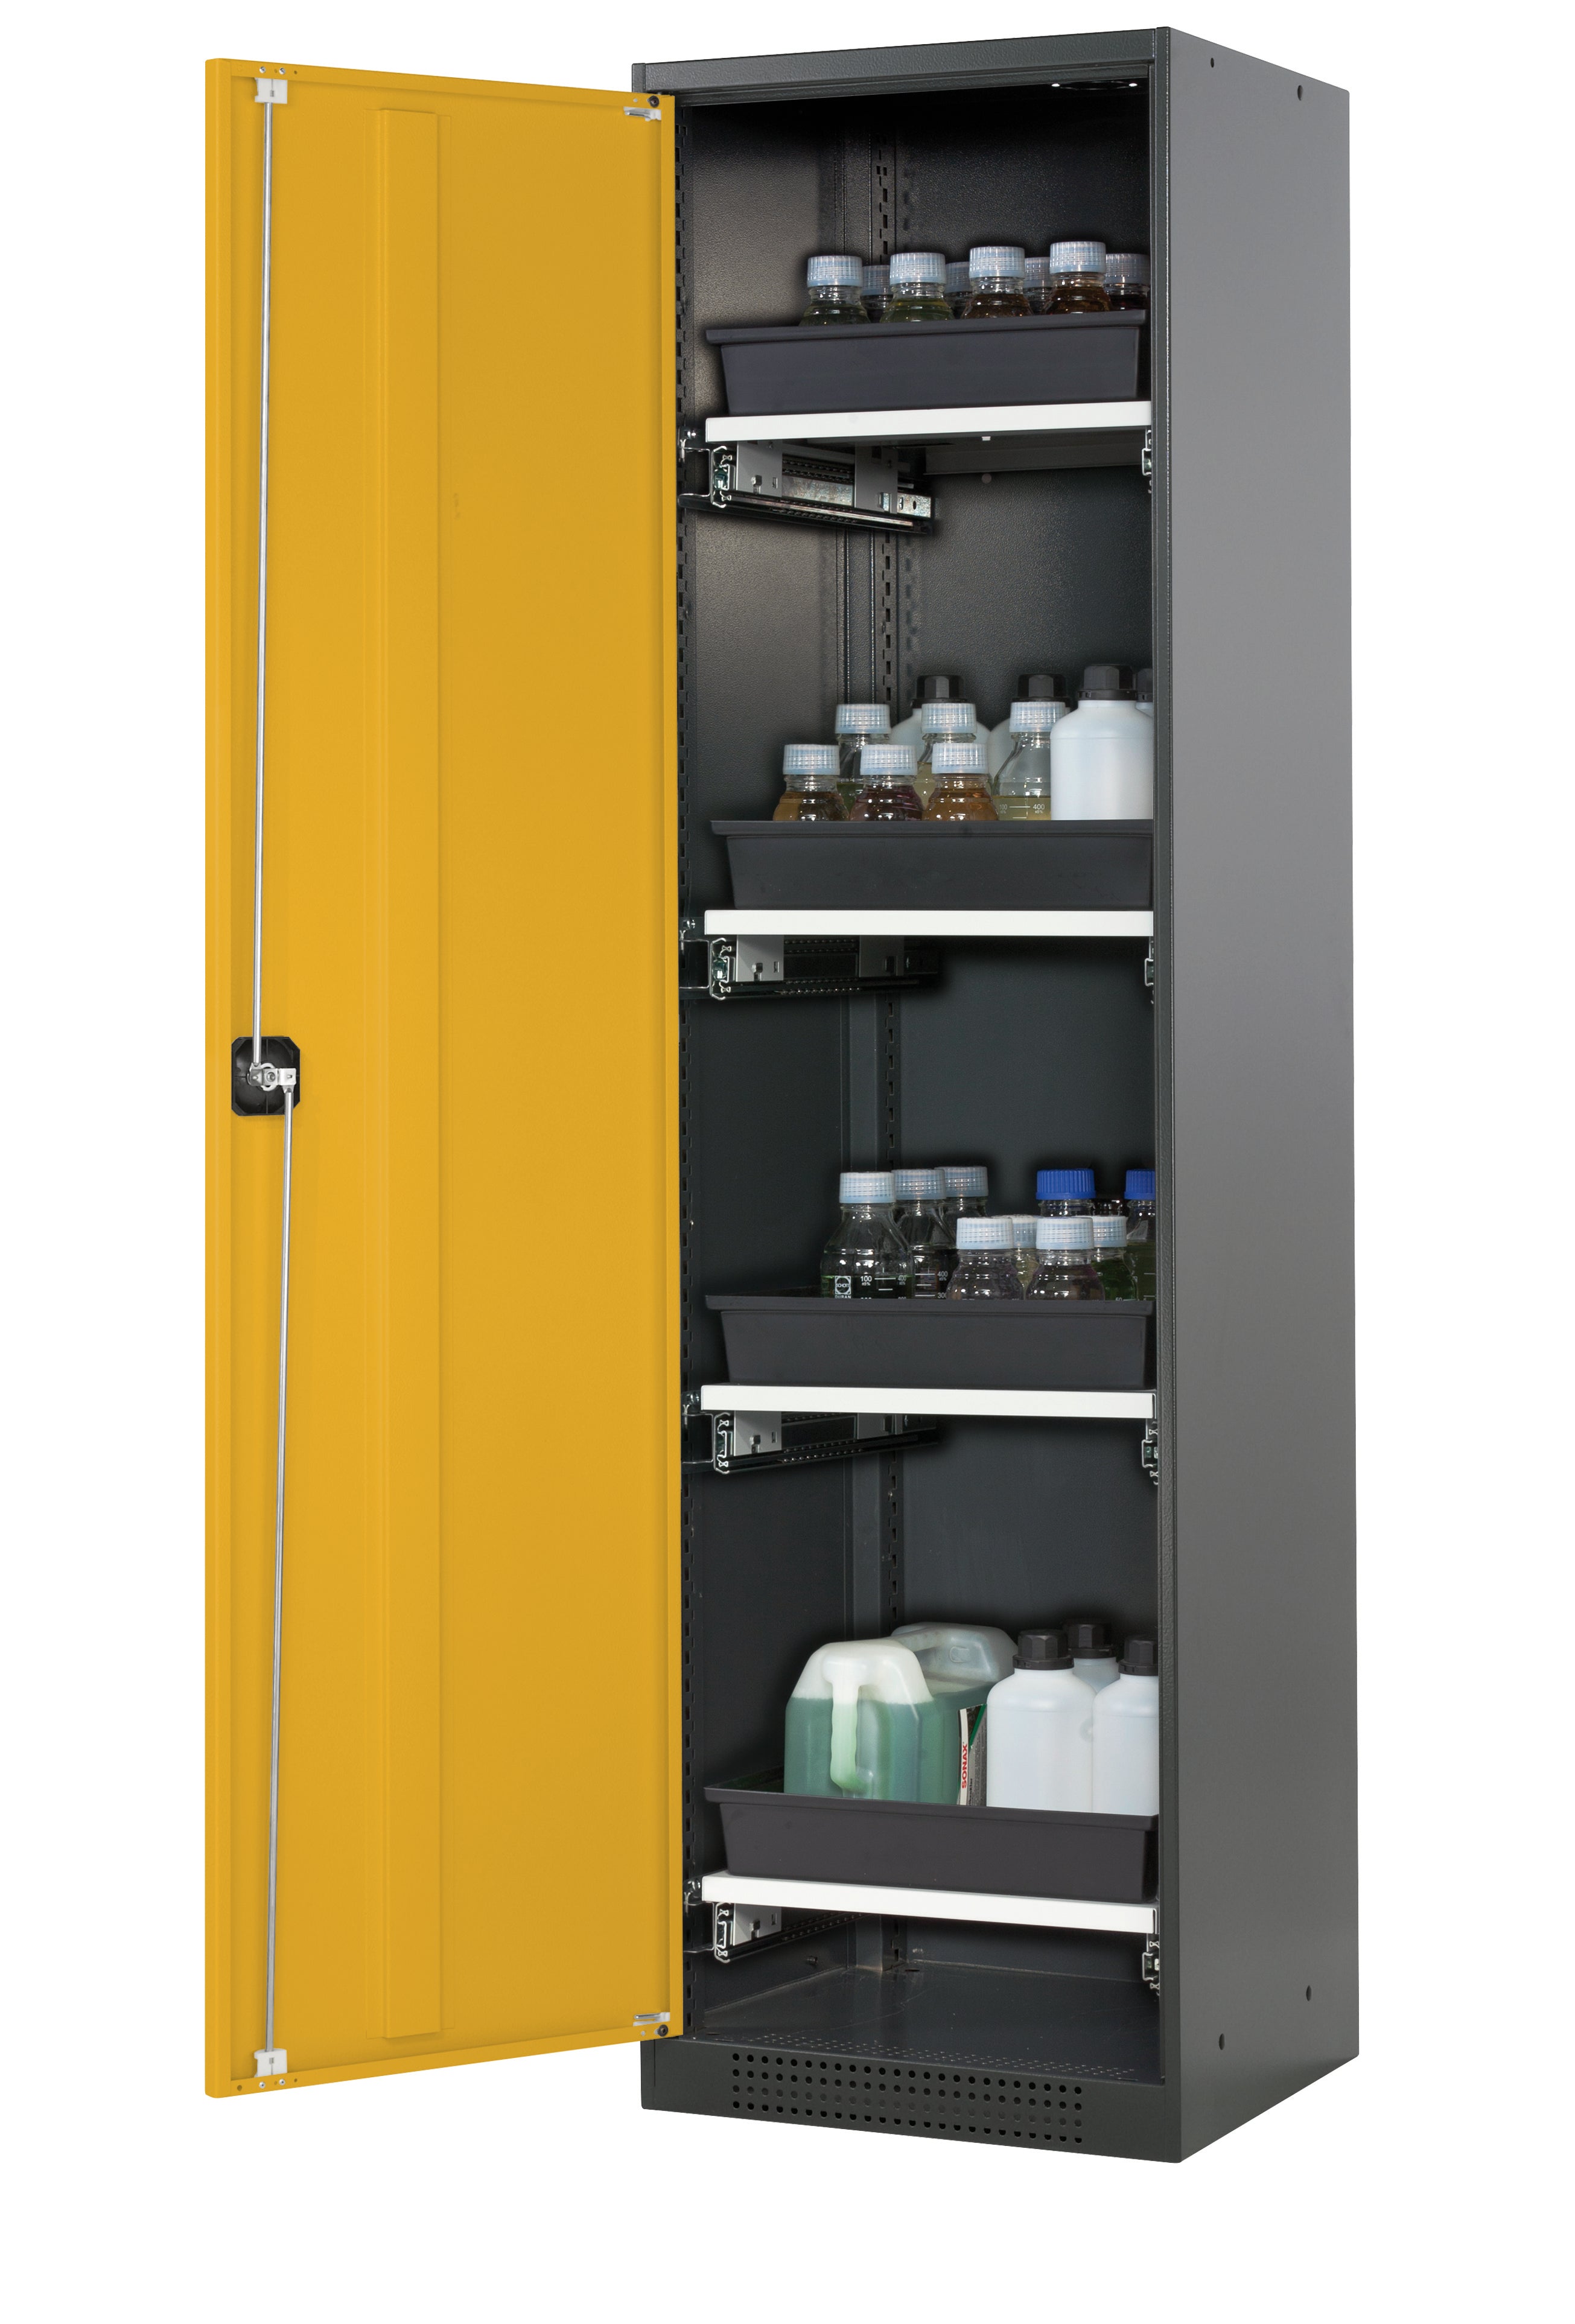 Armoire chimique CS-CLASSIC modèle CS.195.054 en jaune sécurité RAL 1004 avec 4 étagères coulissantes AbZ (tôle d'acier/polypropylène)